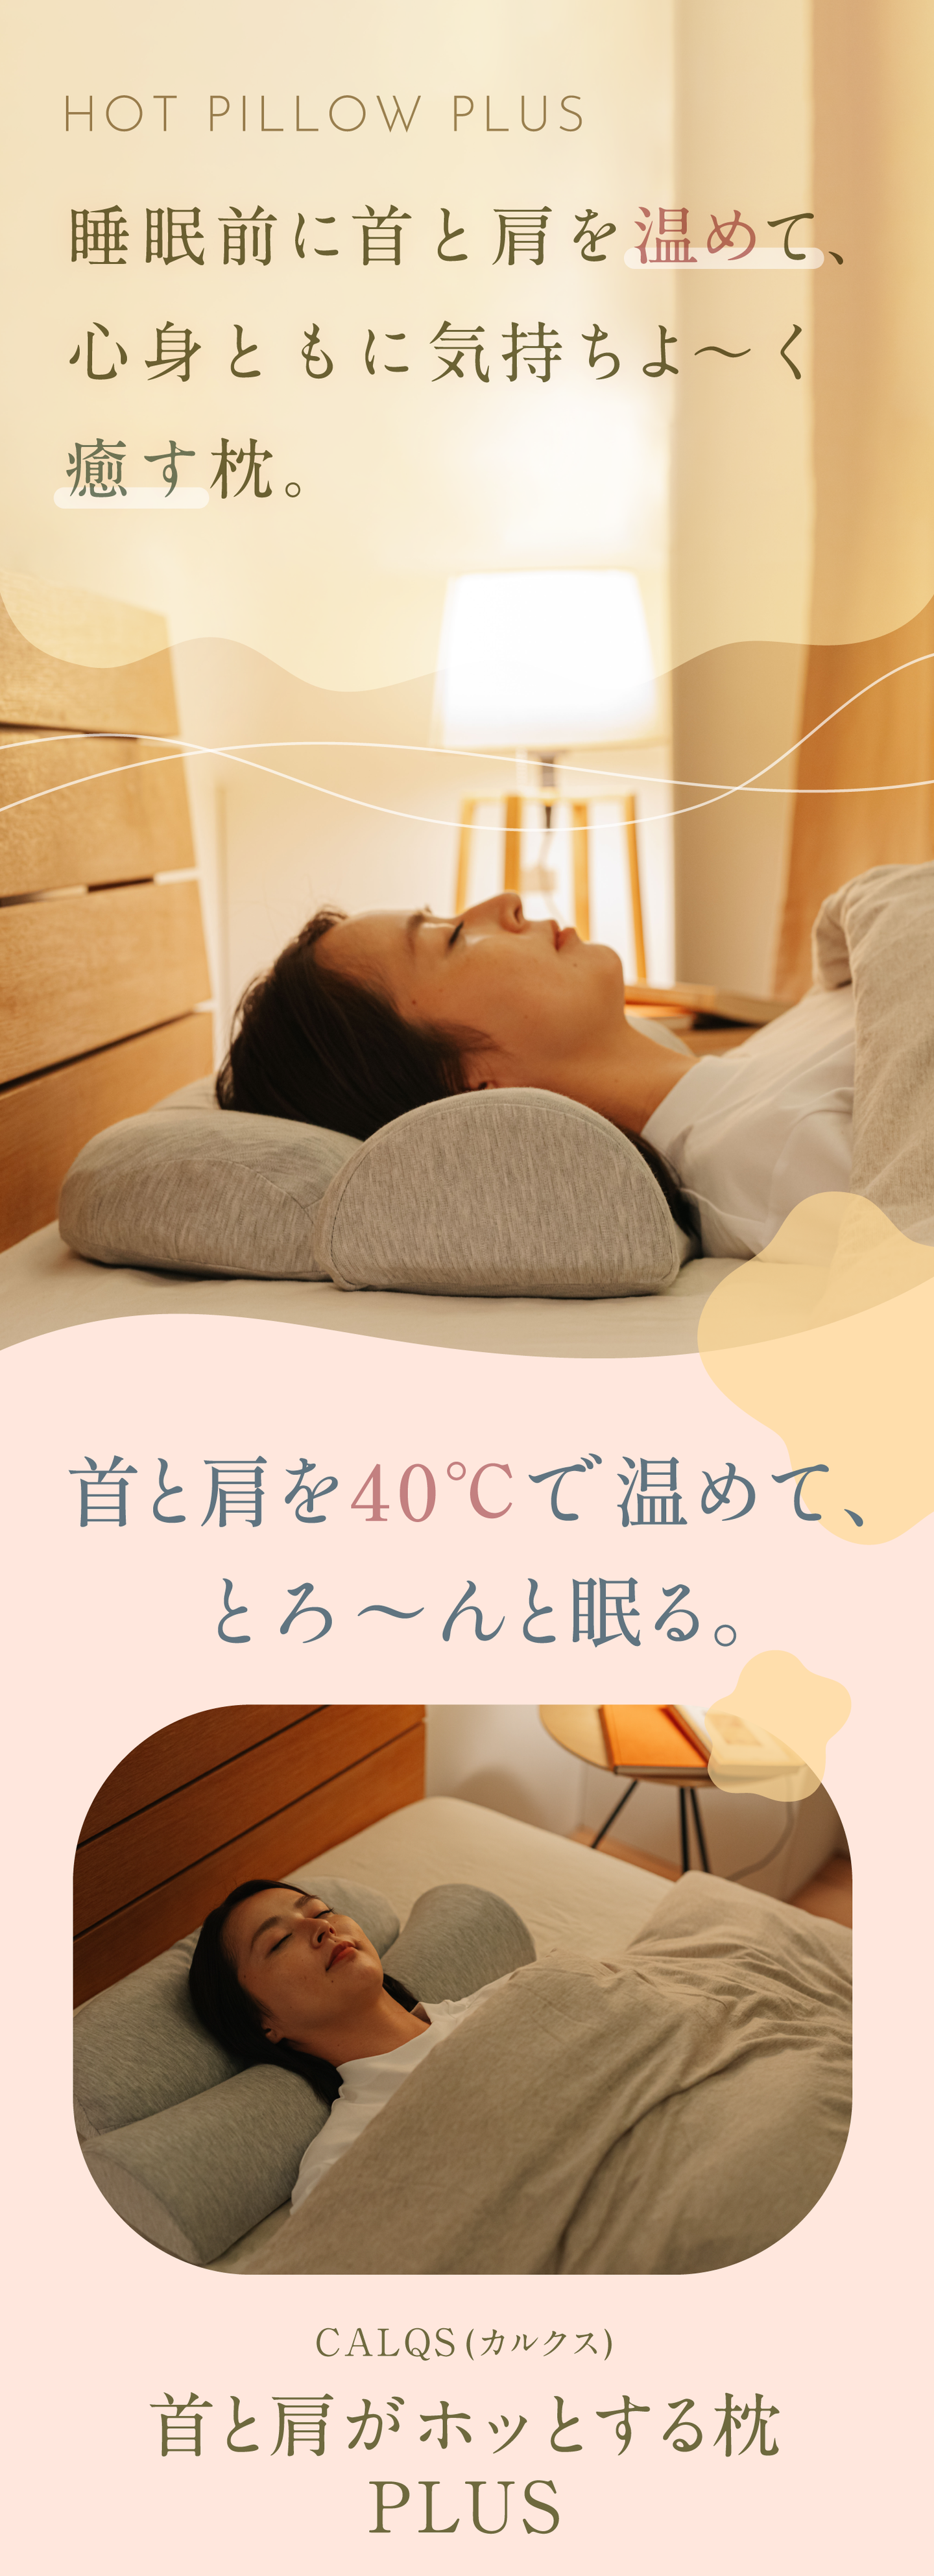 首と肩がホッとする枕PLUS | 首を40度で15分間温めながら揉むことで心地よい睡眠を手に入れられるホットまくらプラス【PH01-SA】